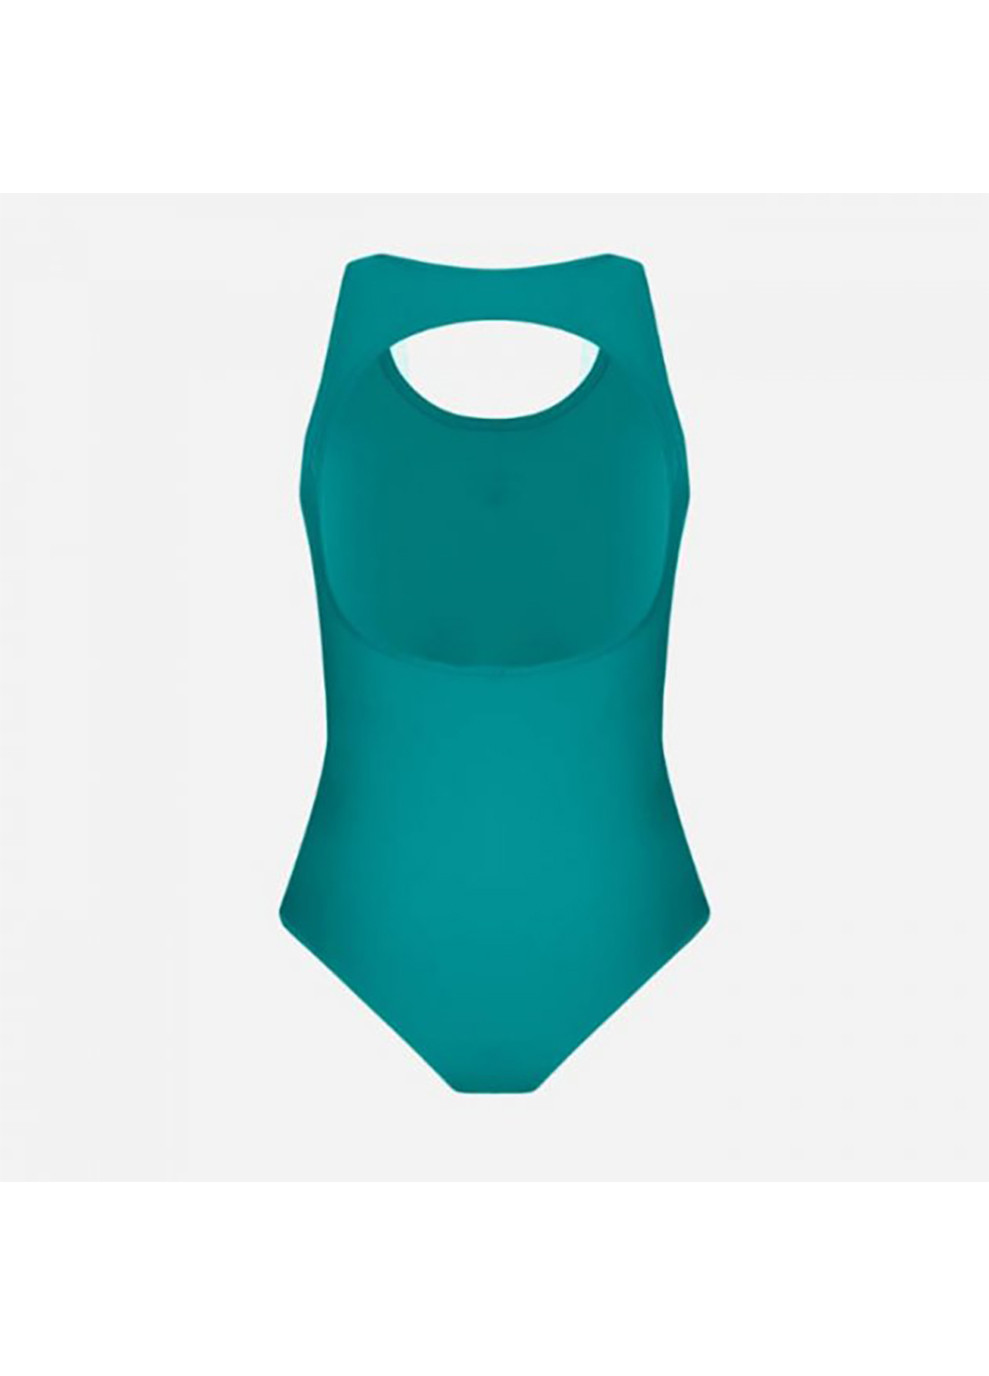 Зелений демісезонний купальник злитий жіночий solid o back swimsuit зелений Arena